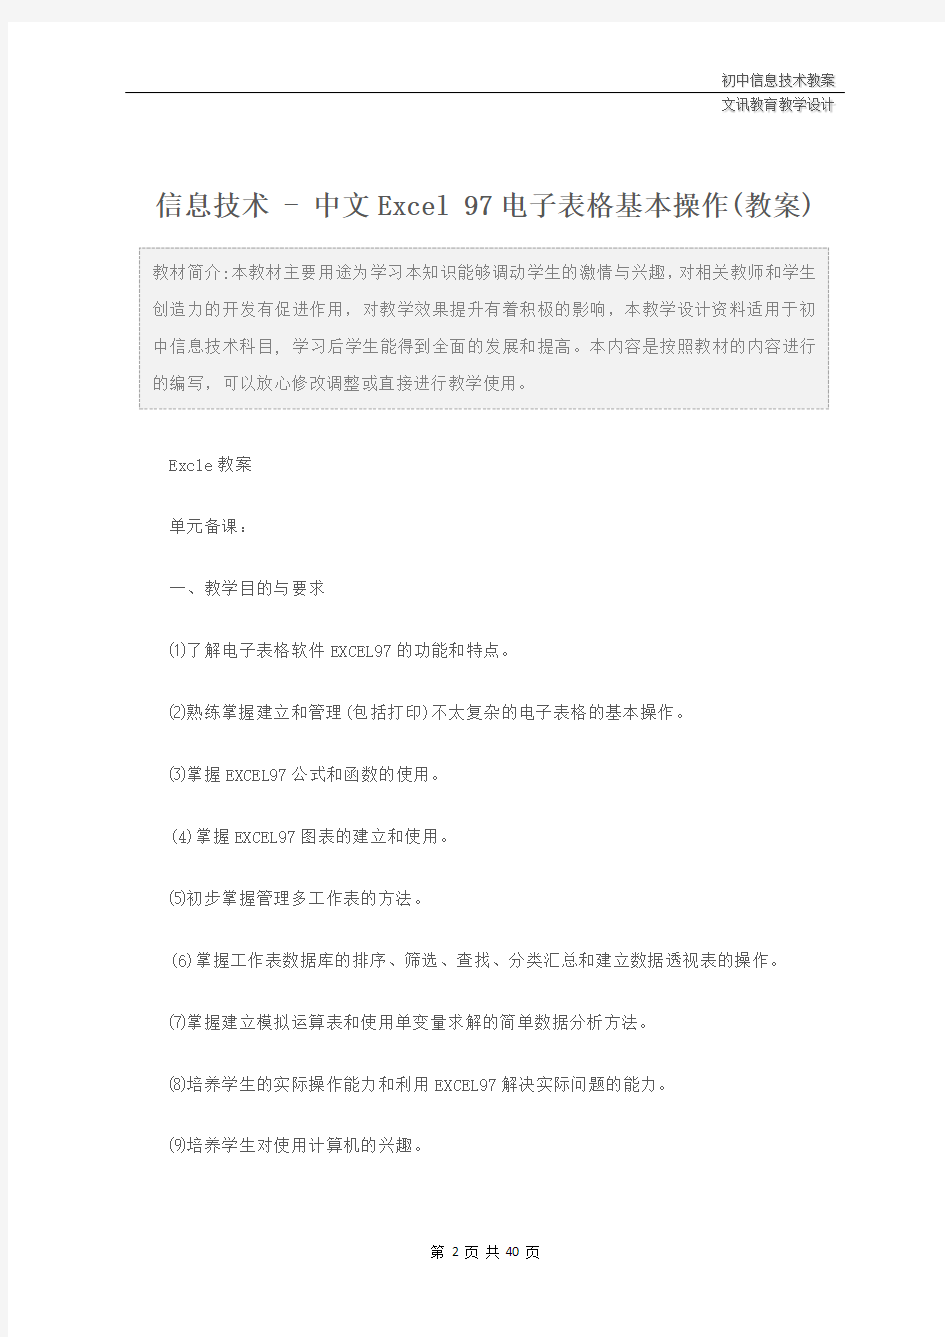 初中：信息技术 - 中文Excel 97电子表格基本操作(教案)